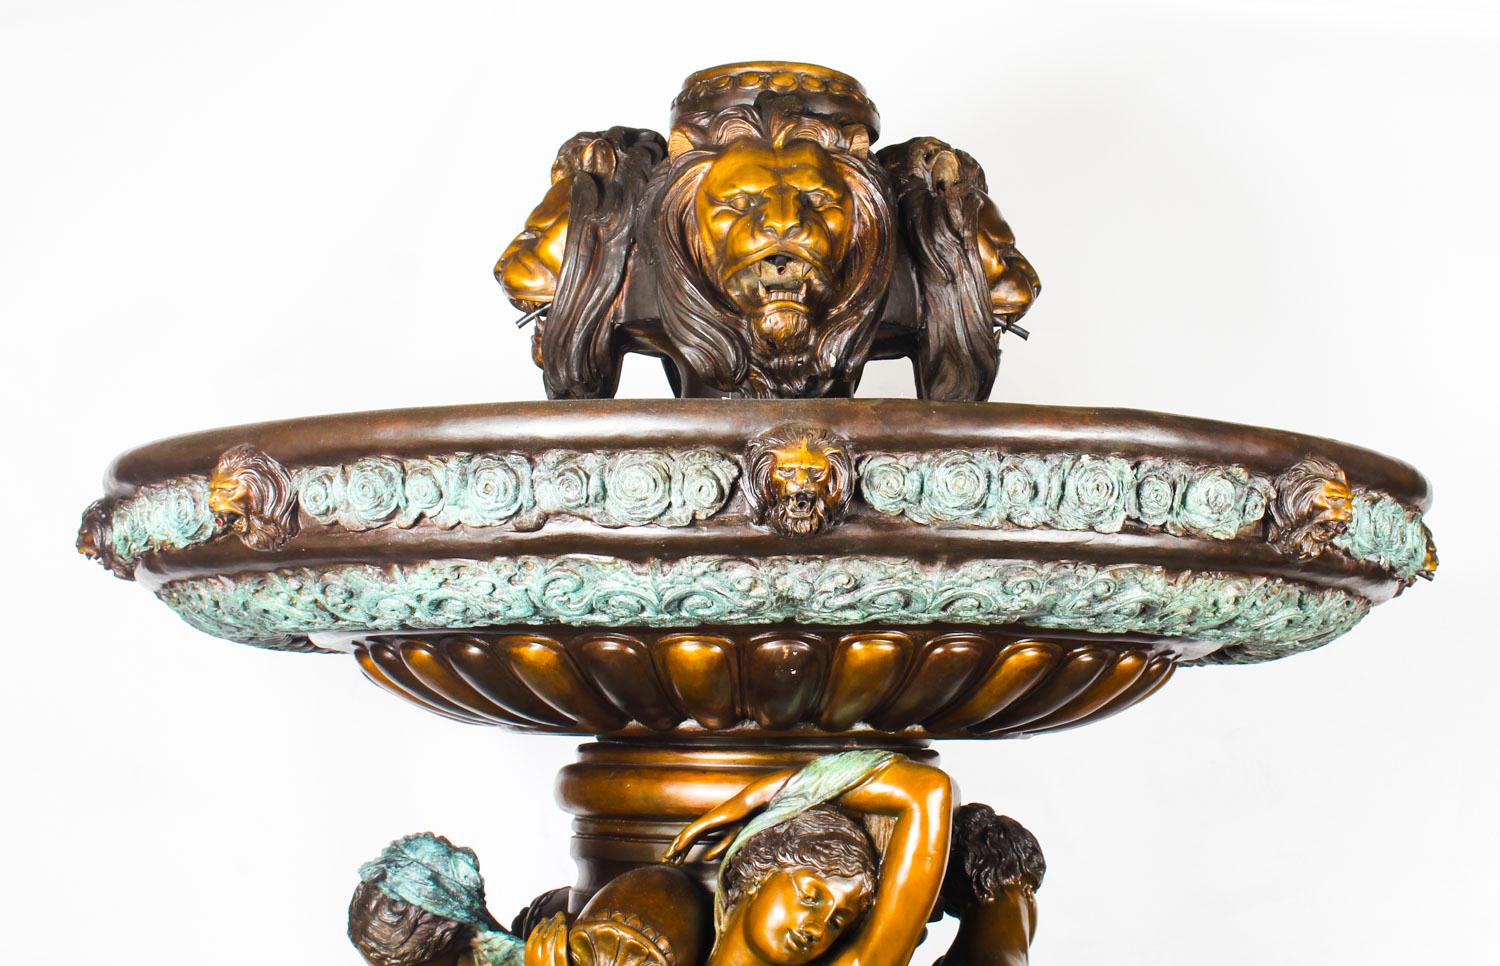 Dies ist ein monumentaler italienischer zweistufiger Brunnen aus Bronze im neoklassizistischen Stil aus dem späten zwanzigsten Jahrhundert.
 
Dieser gewaltige Brunnen versprüht Wasser aus der Spitze, aus den Vasen, die von den Jungfrauen gehalten